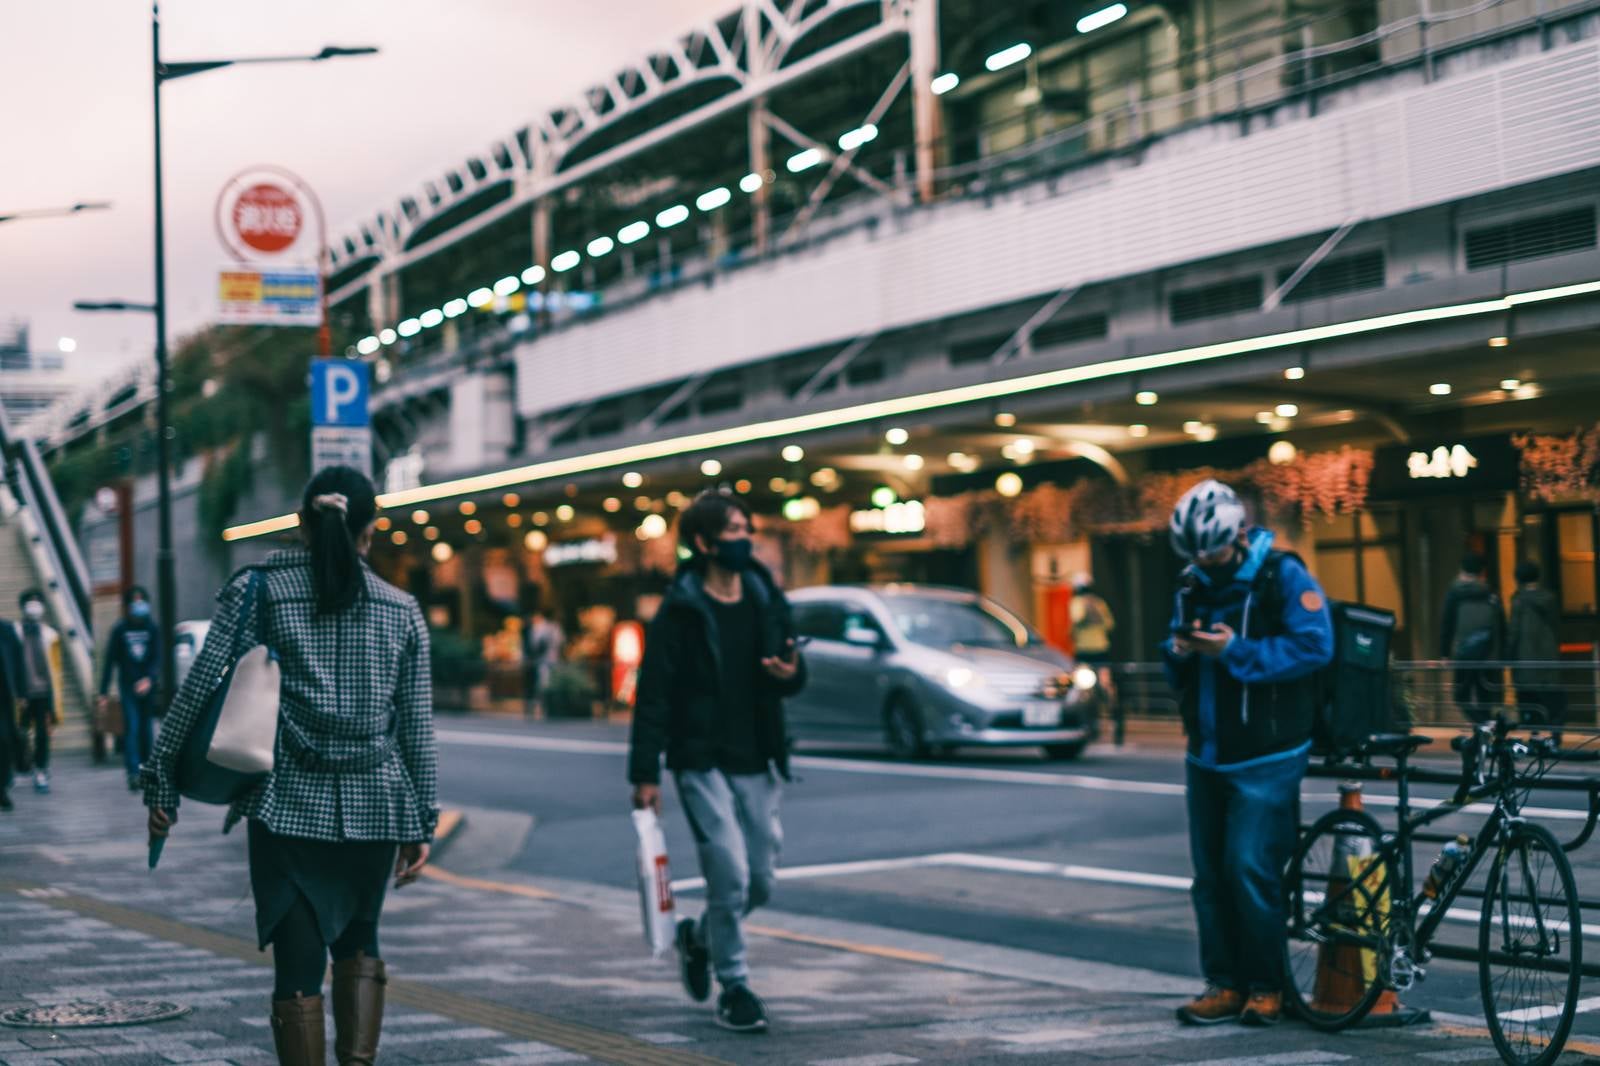 「駅前の歩道を行き交う通行人」の写真